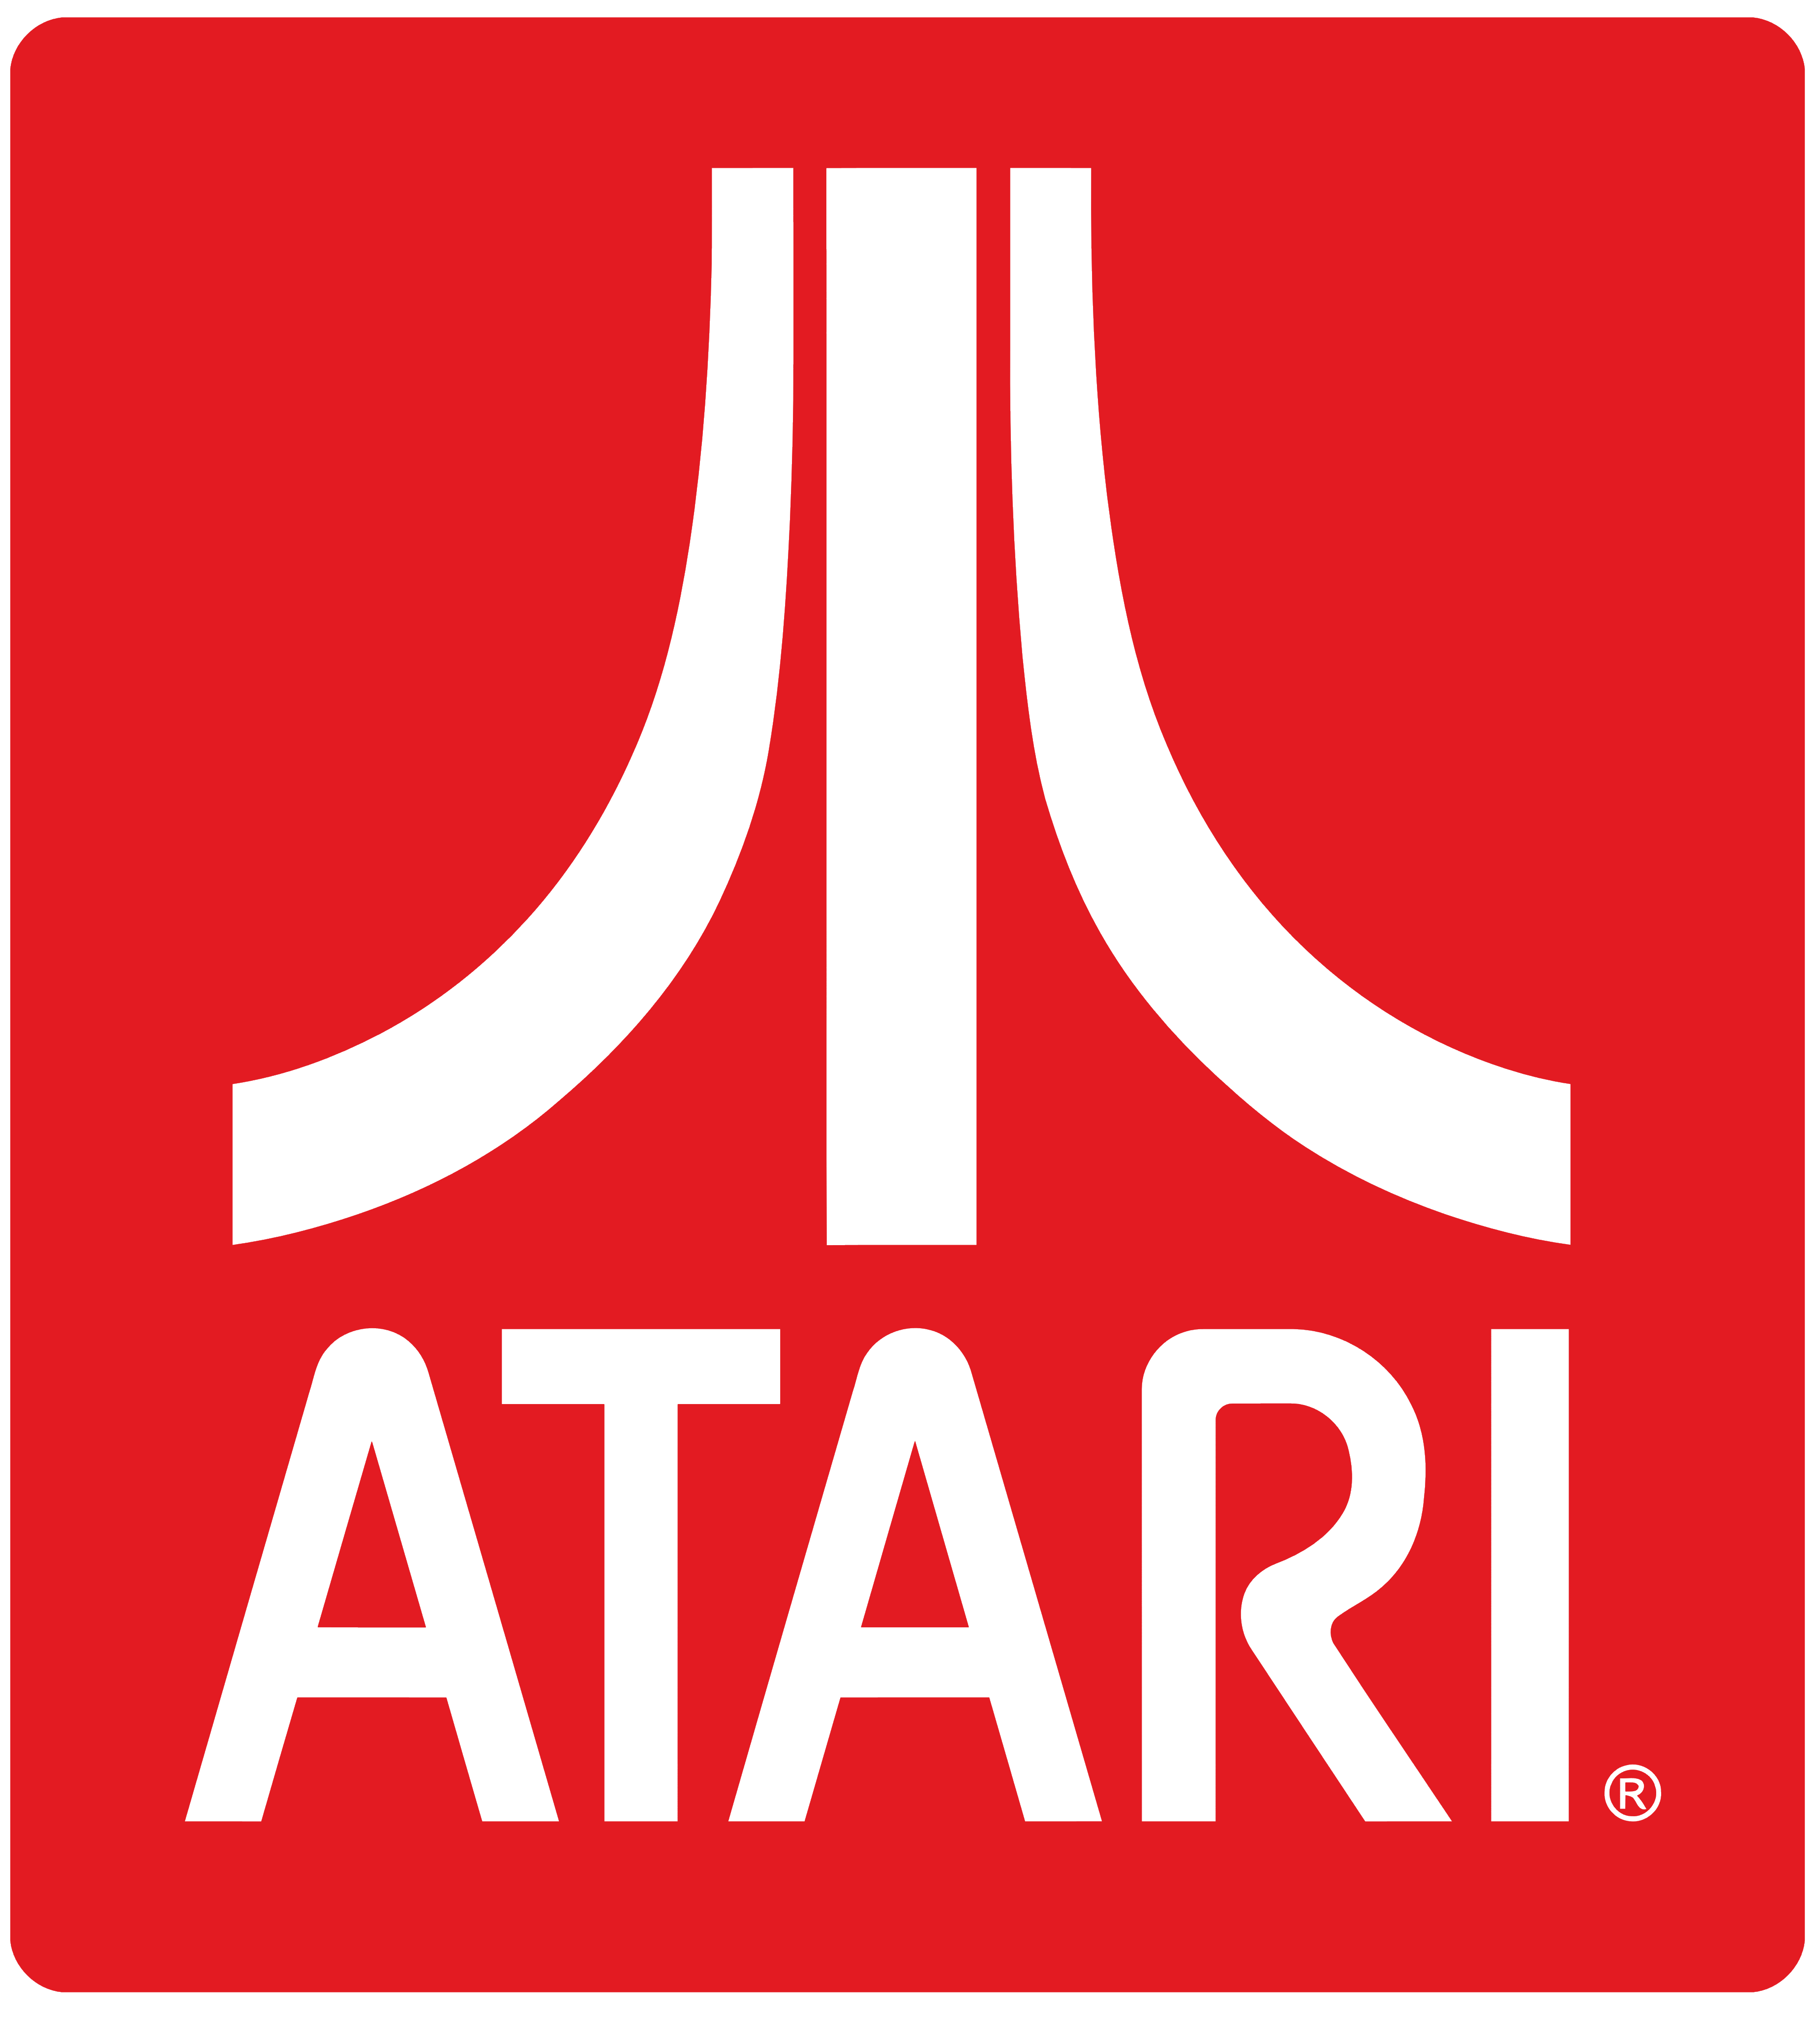 Atari logo, logotype